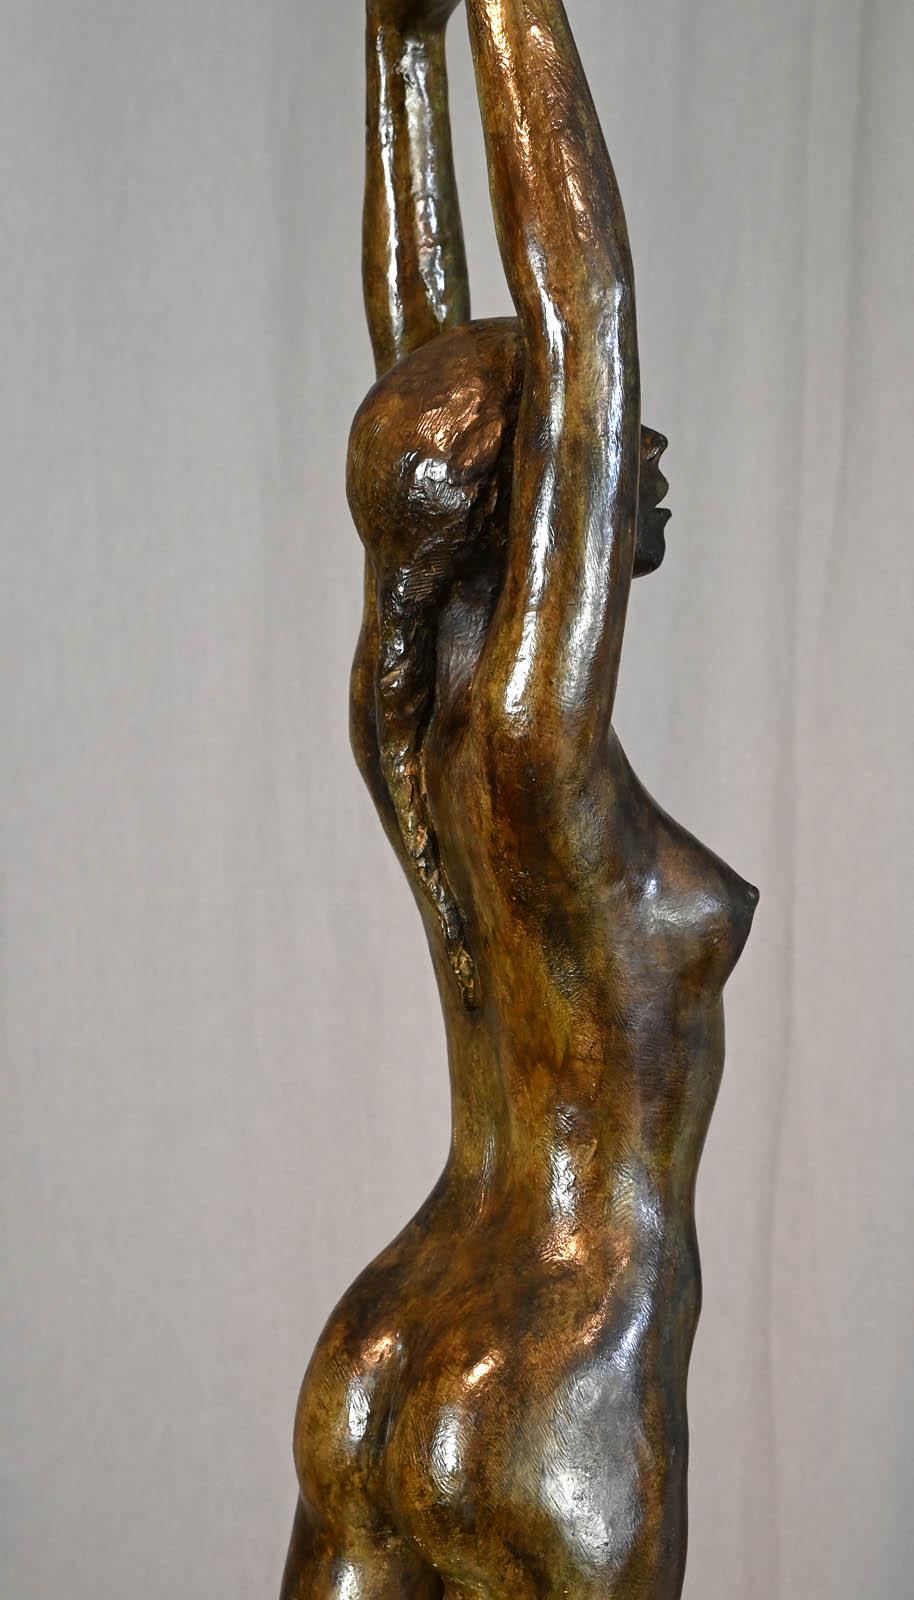 Jacques COQUILLAY (geboren 1935) 

Victoire

Original Bronze
Größe: 105 x 22 x 20 cm
Exemplar Nr. 1/8
Signatur und Nummerierung auf dem Sockel.
Original-Bronze, hergestellt mit 